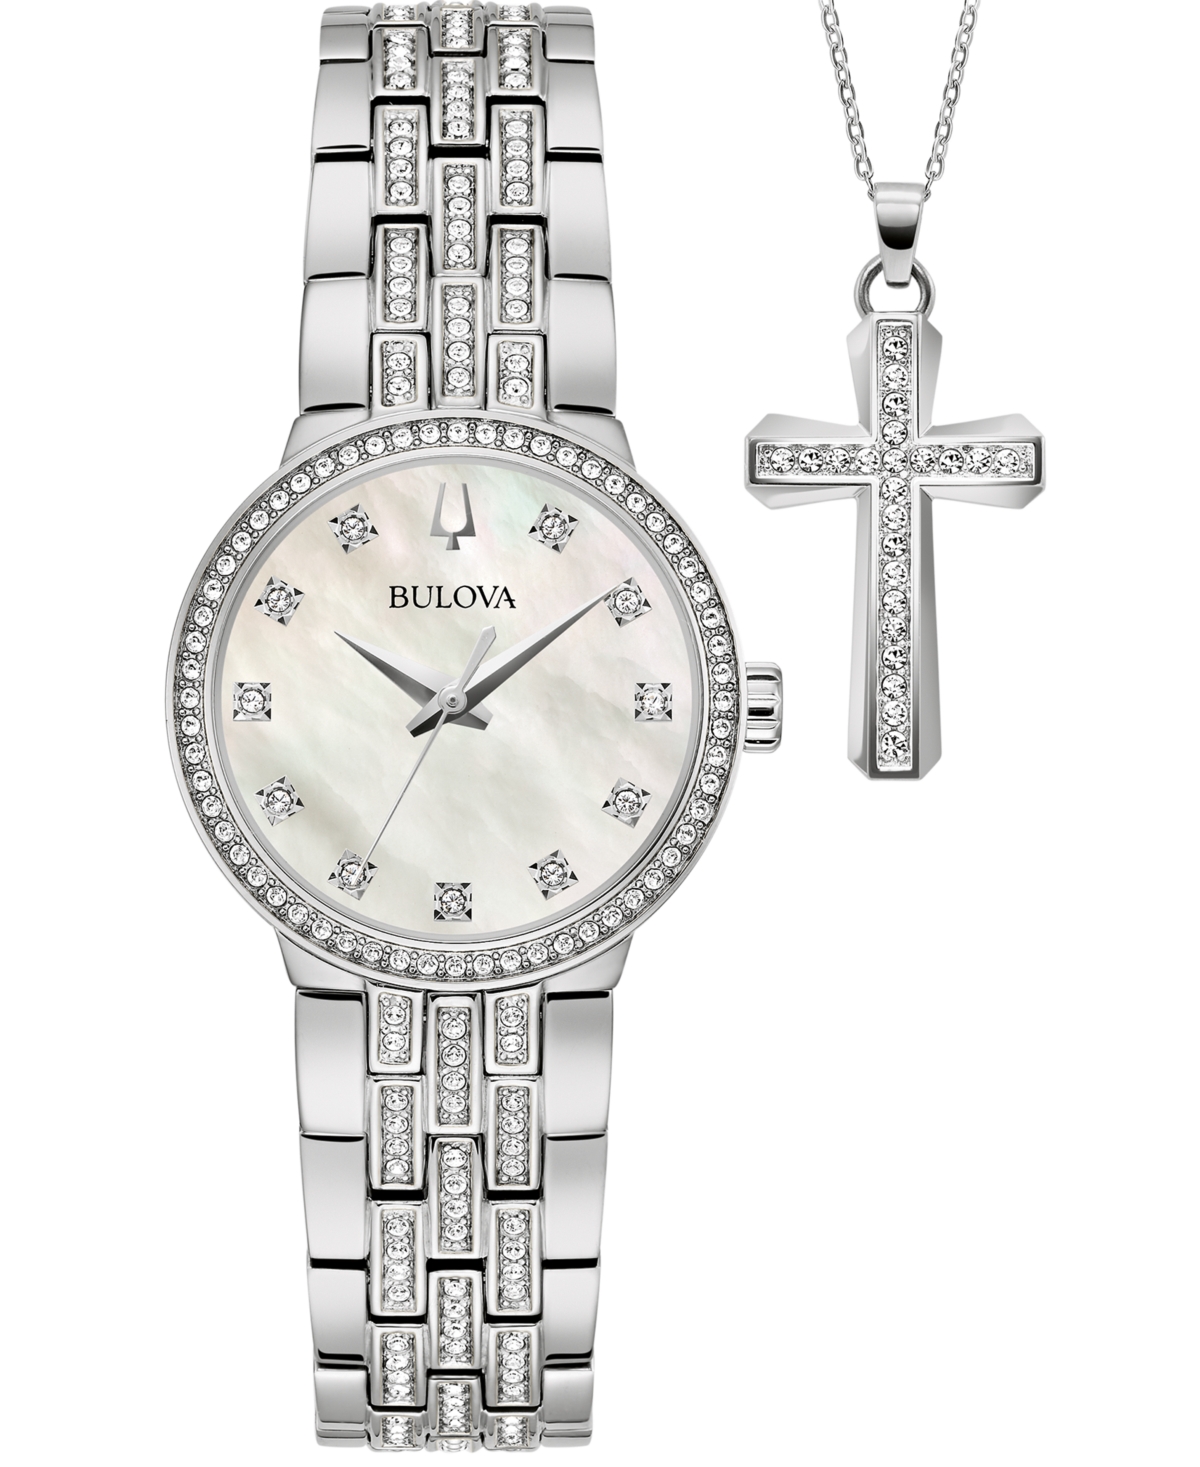 Bulova Women's Classic Crystal Stainless Steel Bracelet Watch Box Set 29mm In Silver